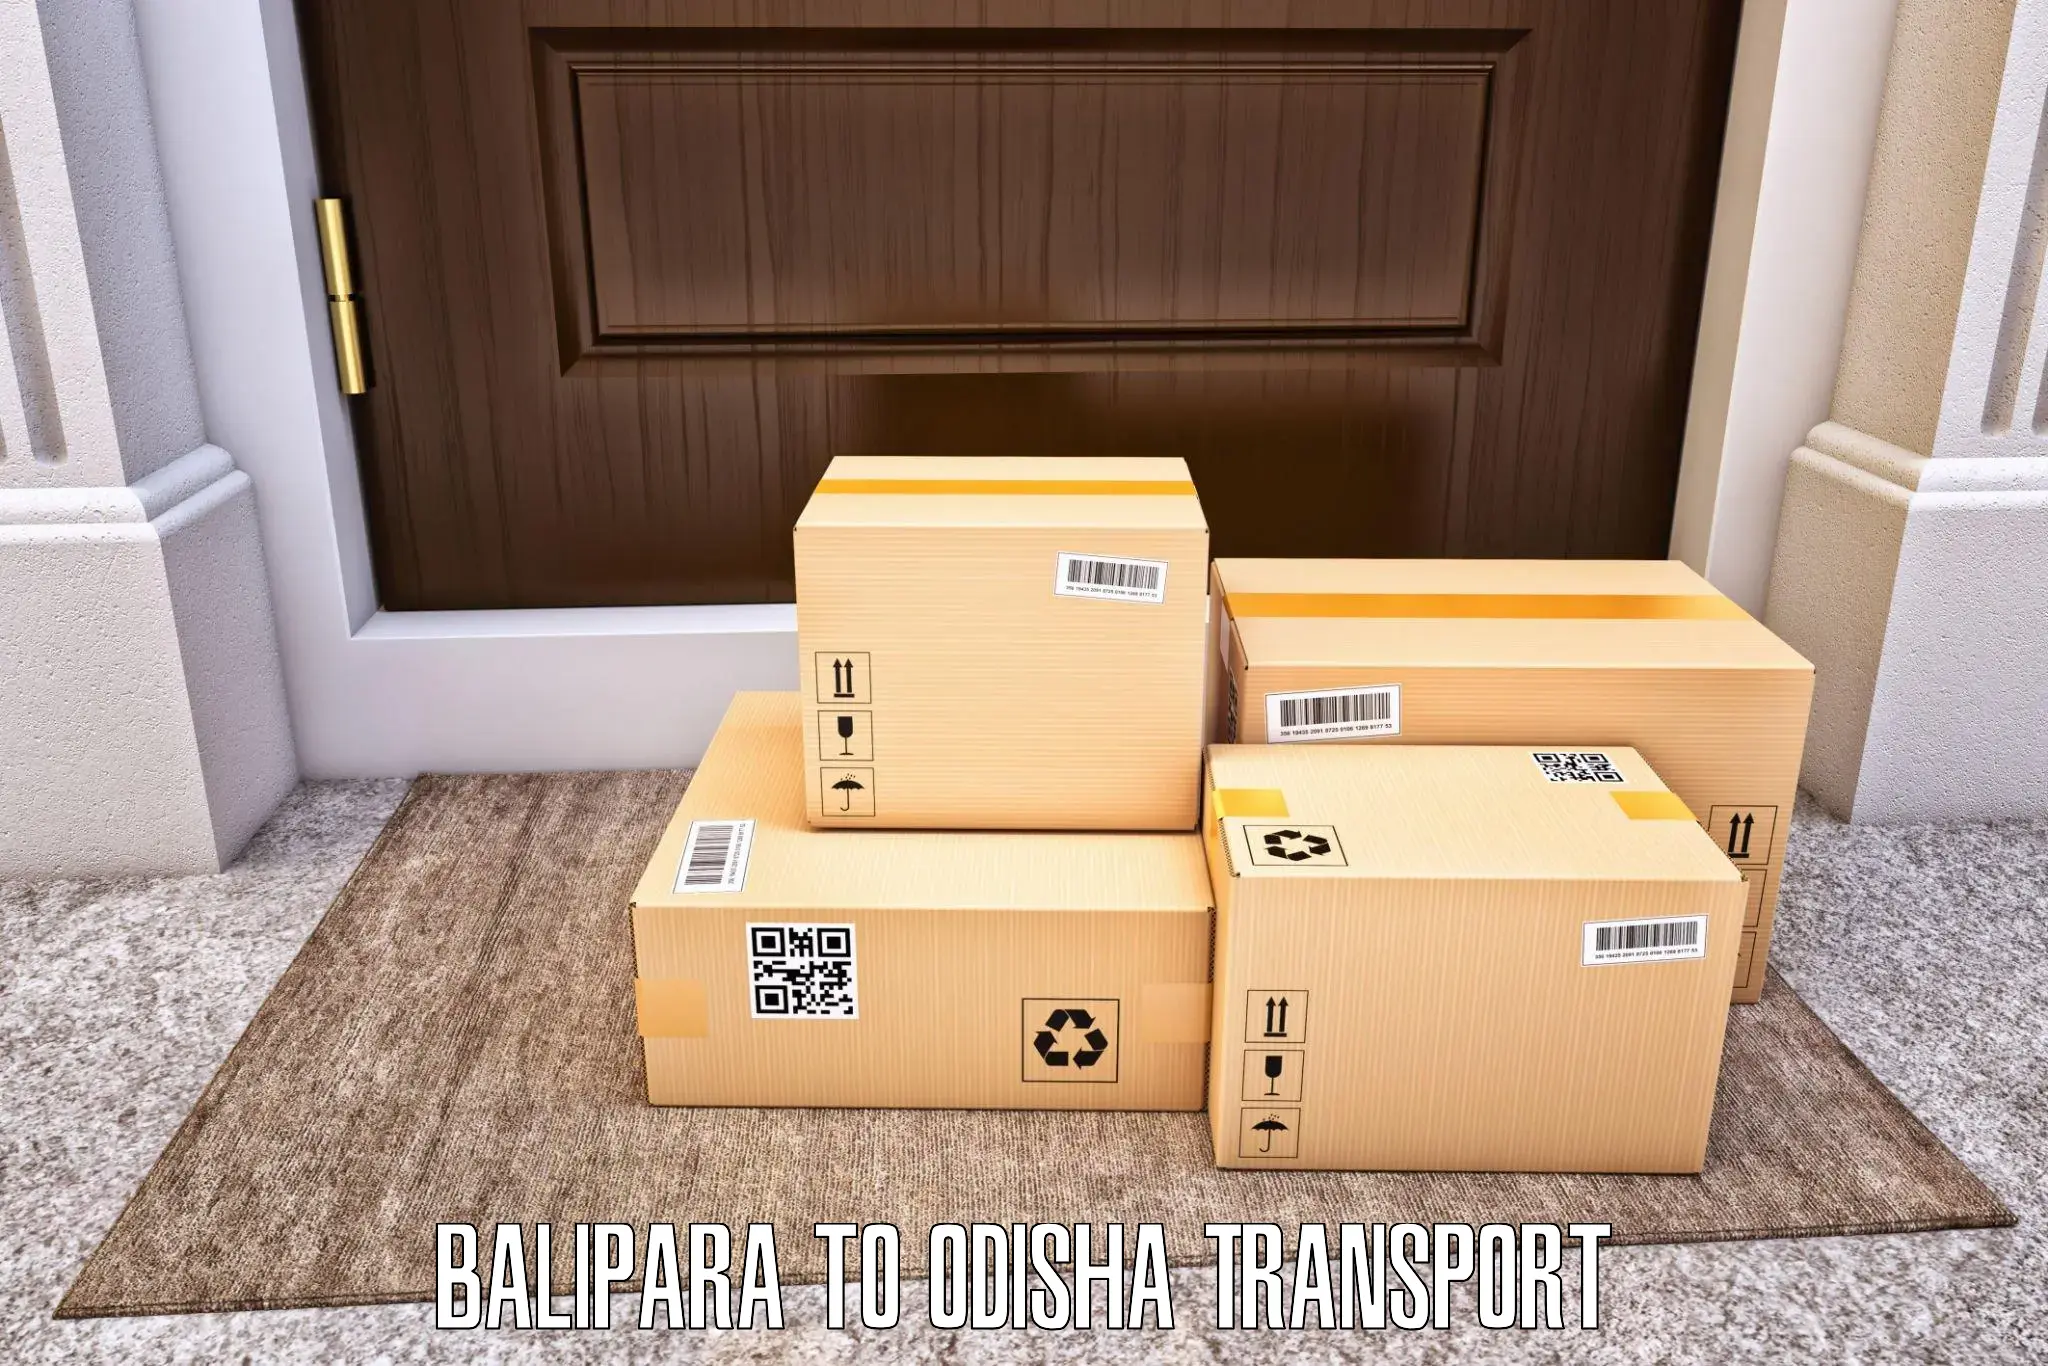 Furniture transport service Balipara to Rourkela